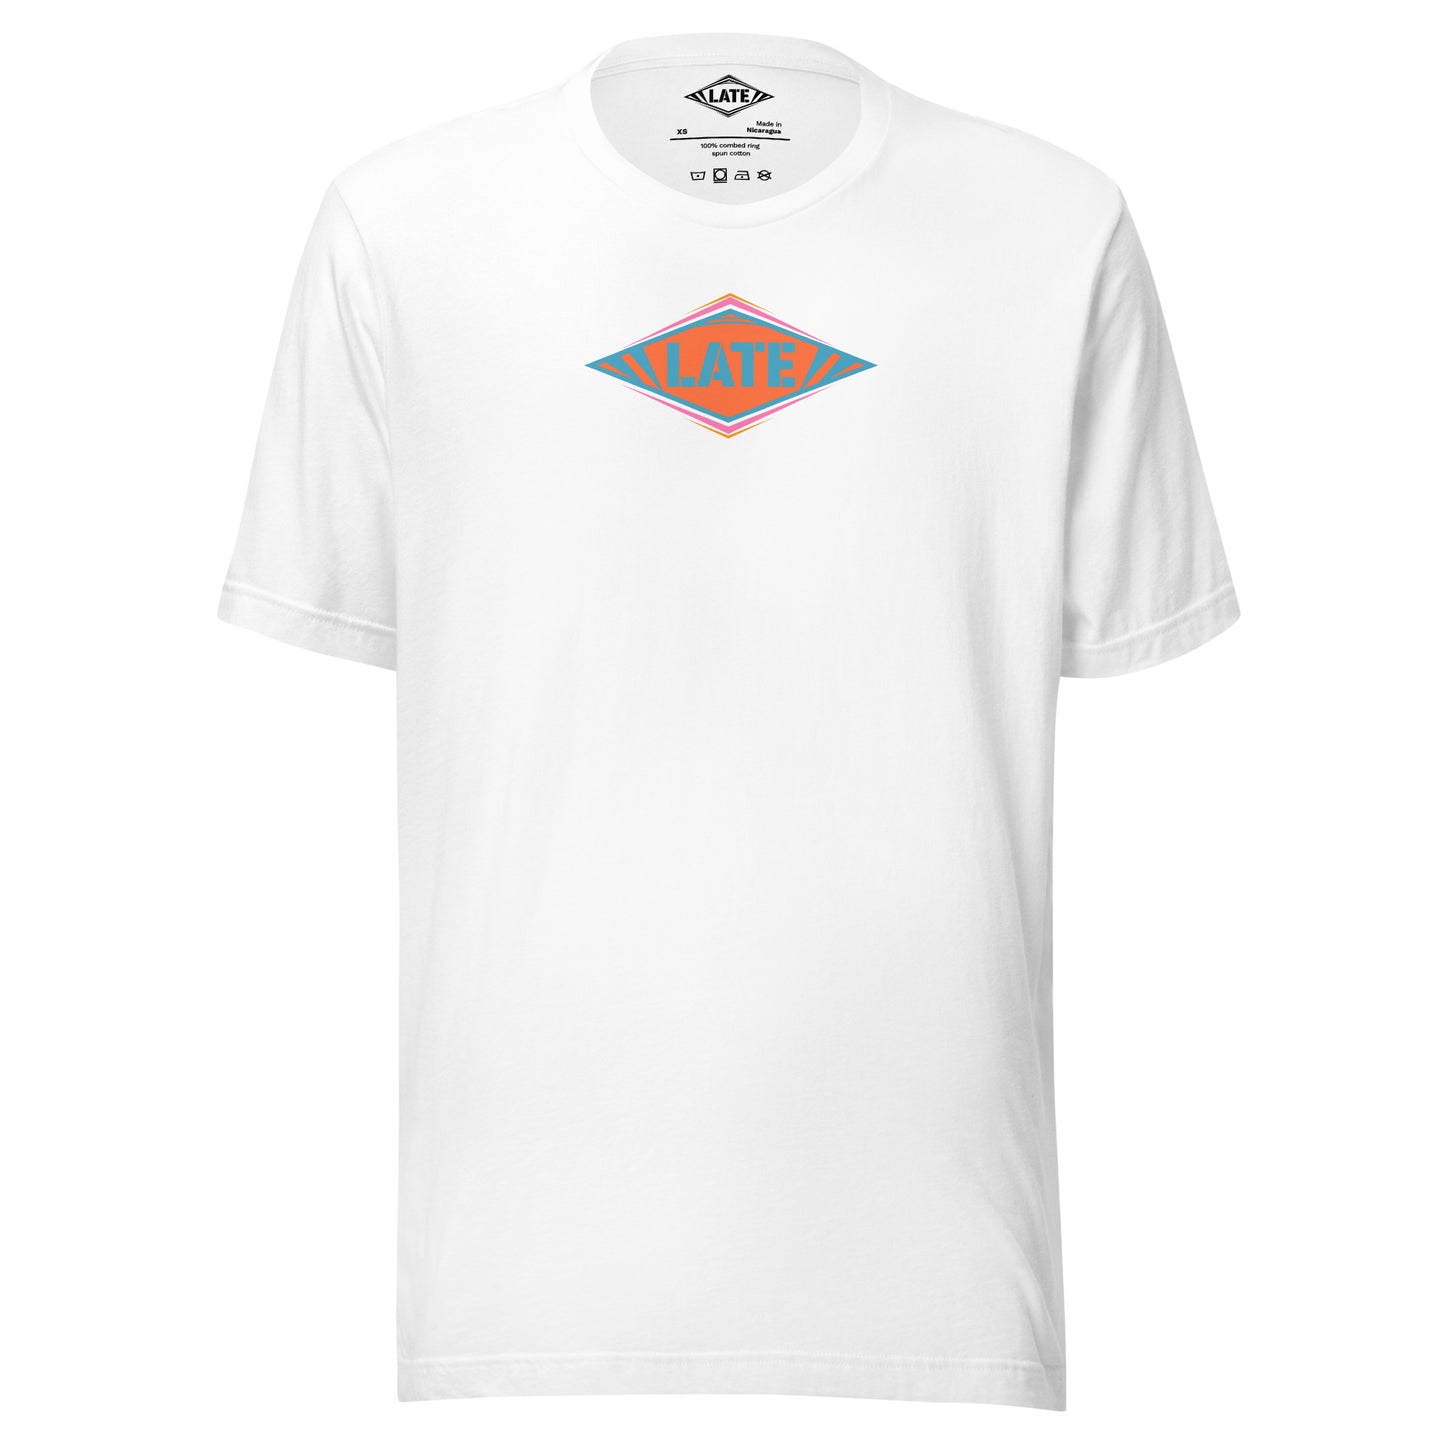 T-Shirt skateboard logo Late coloré bleu orange et violet, t-shirt unisex couleur blanc